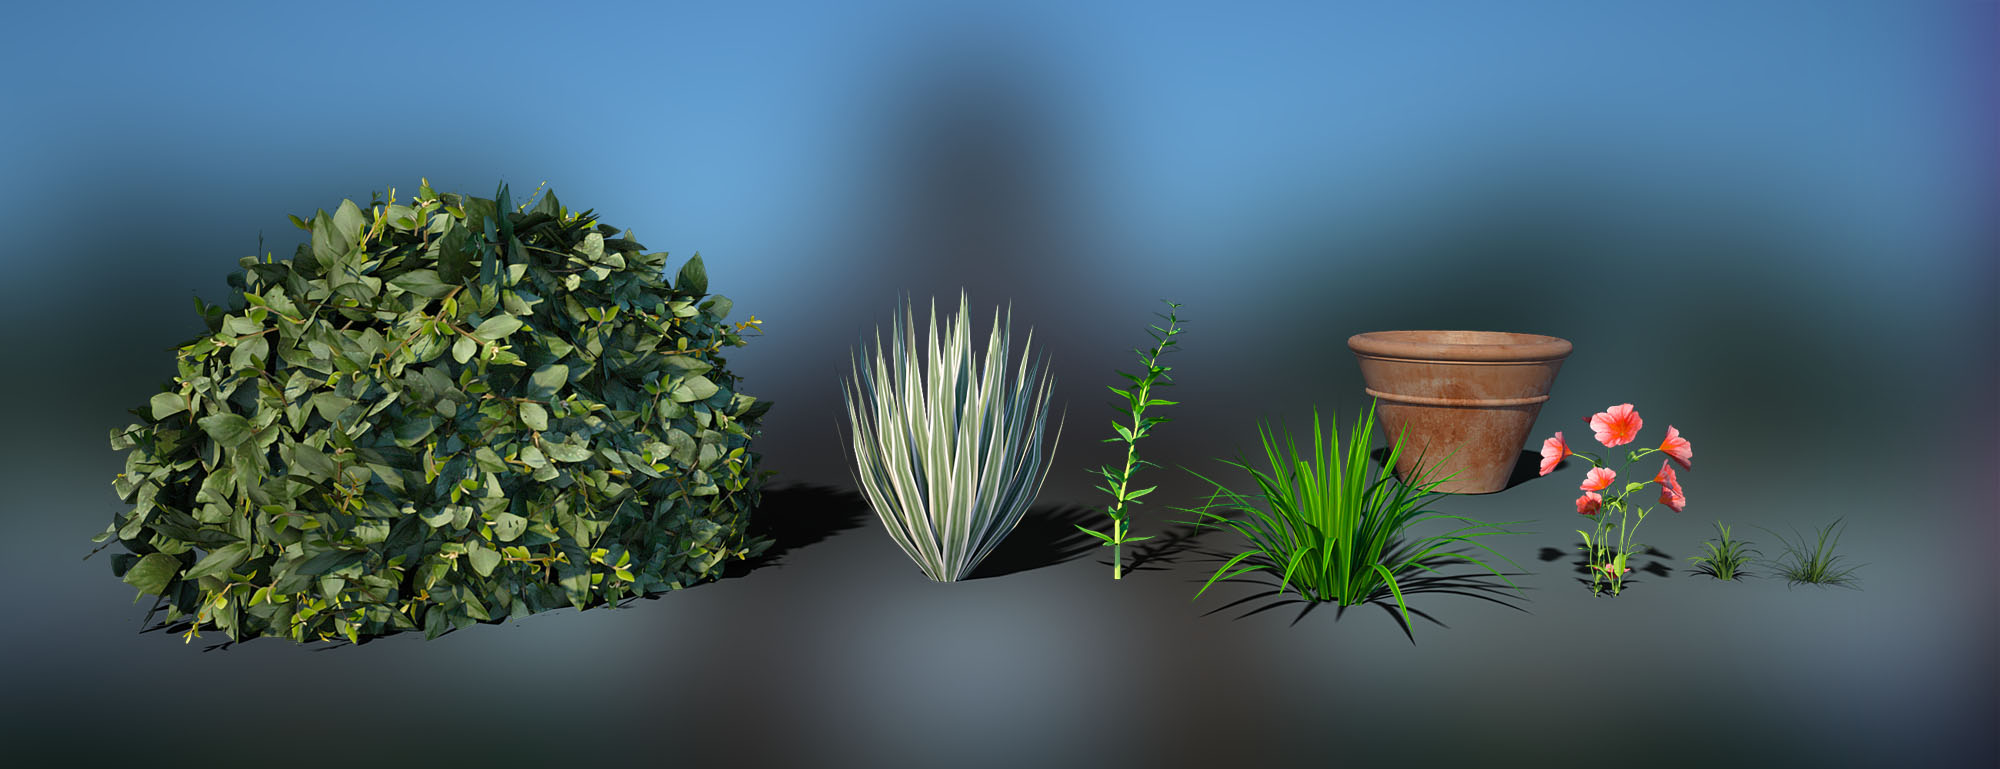 Gazebo, Garden and Patio Set by: bitwelder, 3D Models by Daz 3D